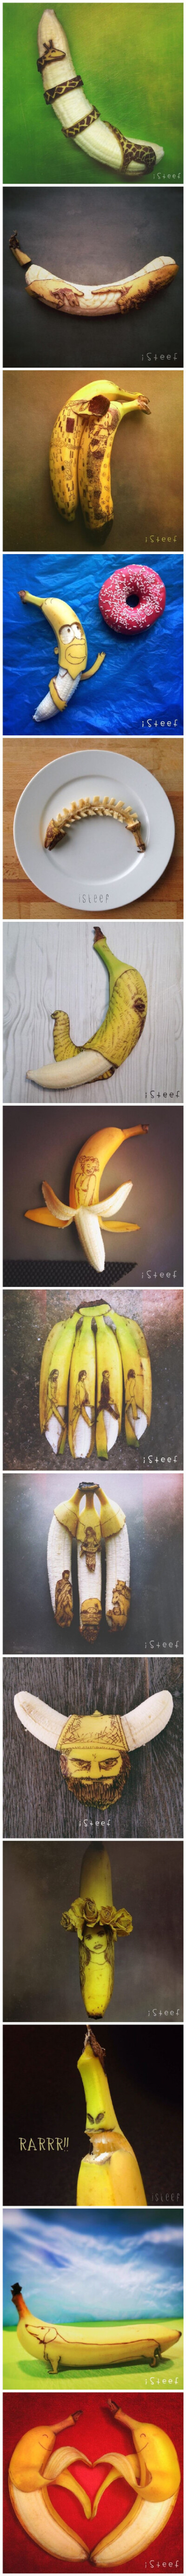 一个叫Stephan Brusche 的艺术家玩香蕉玩出花儿